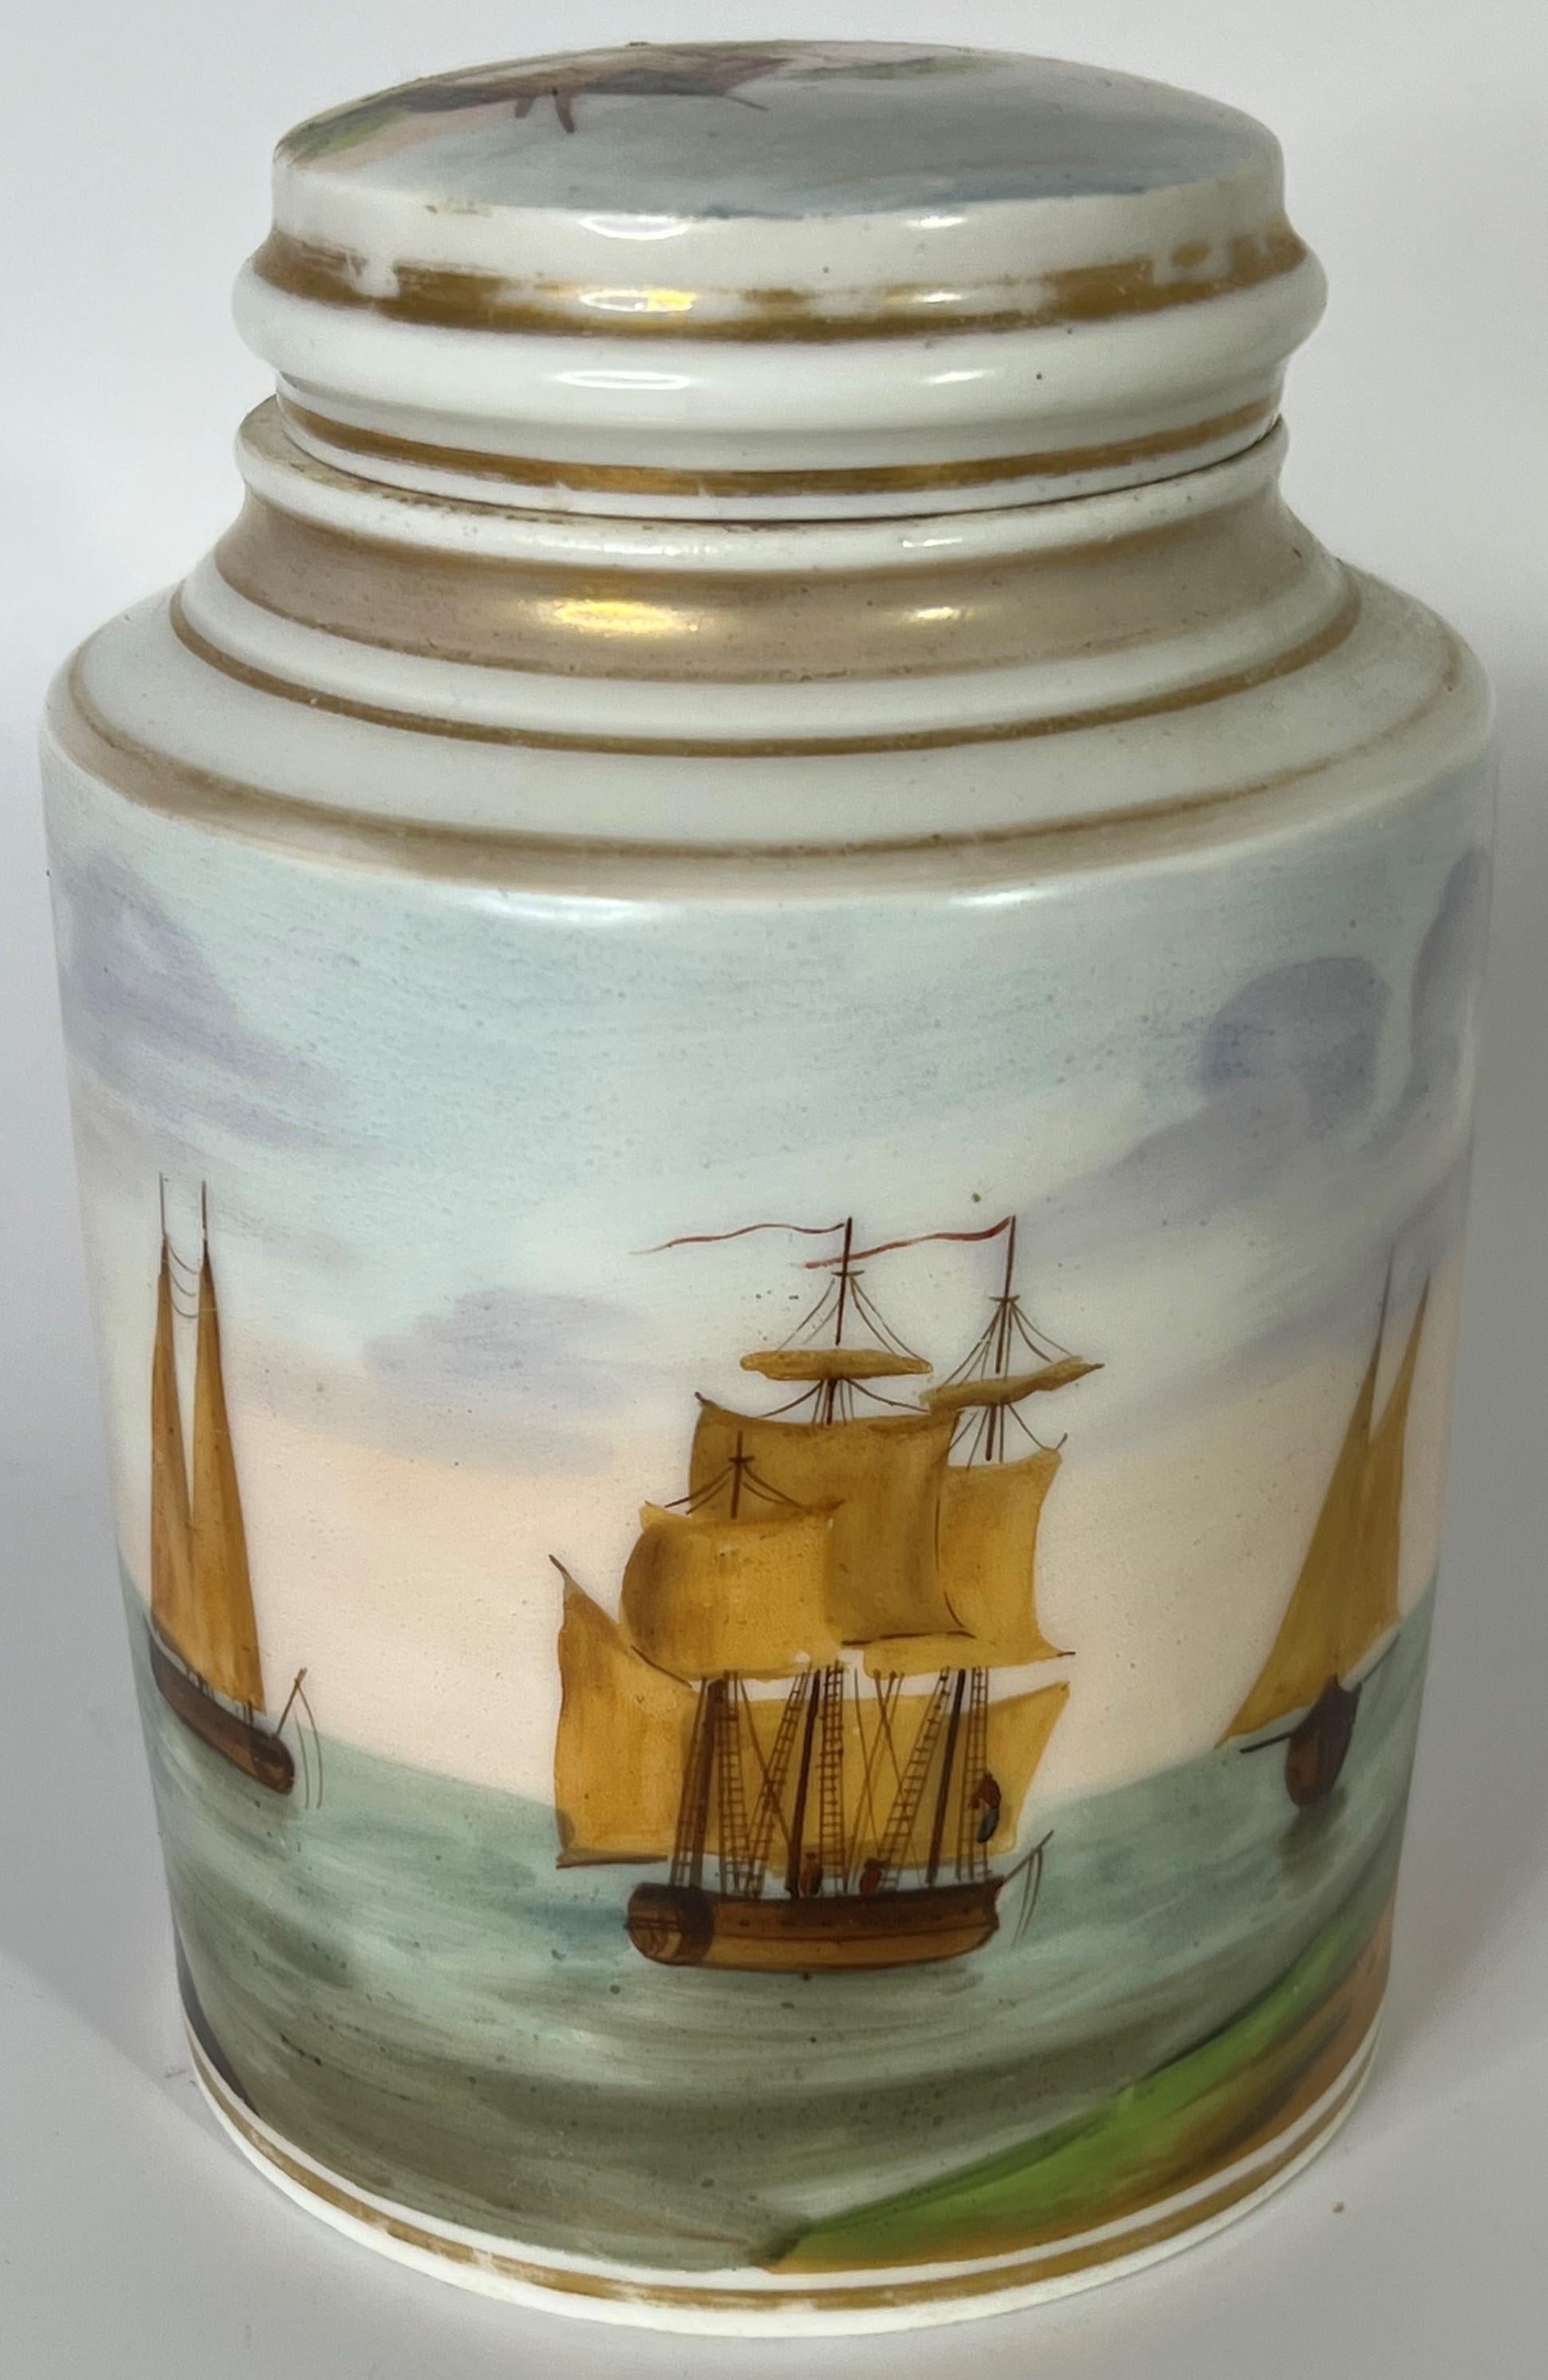 Diese Teedose aus den 1830er Jahren aus dem alten Pariser Empire wird Sie begeistern. Wahrscheinlich wurde sie als Teekanne entworfen und verkauft, aber ein Gefäß mit Deckel kann sicherlich viele Funktionen erfüllen. Die gemalte Hafenszene ist